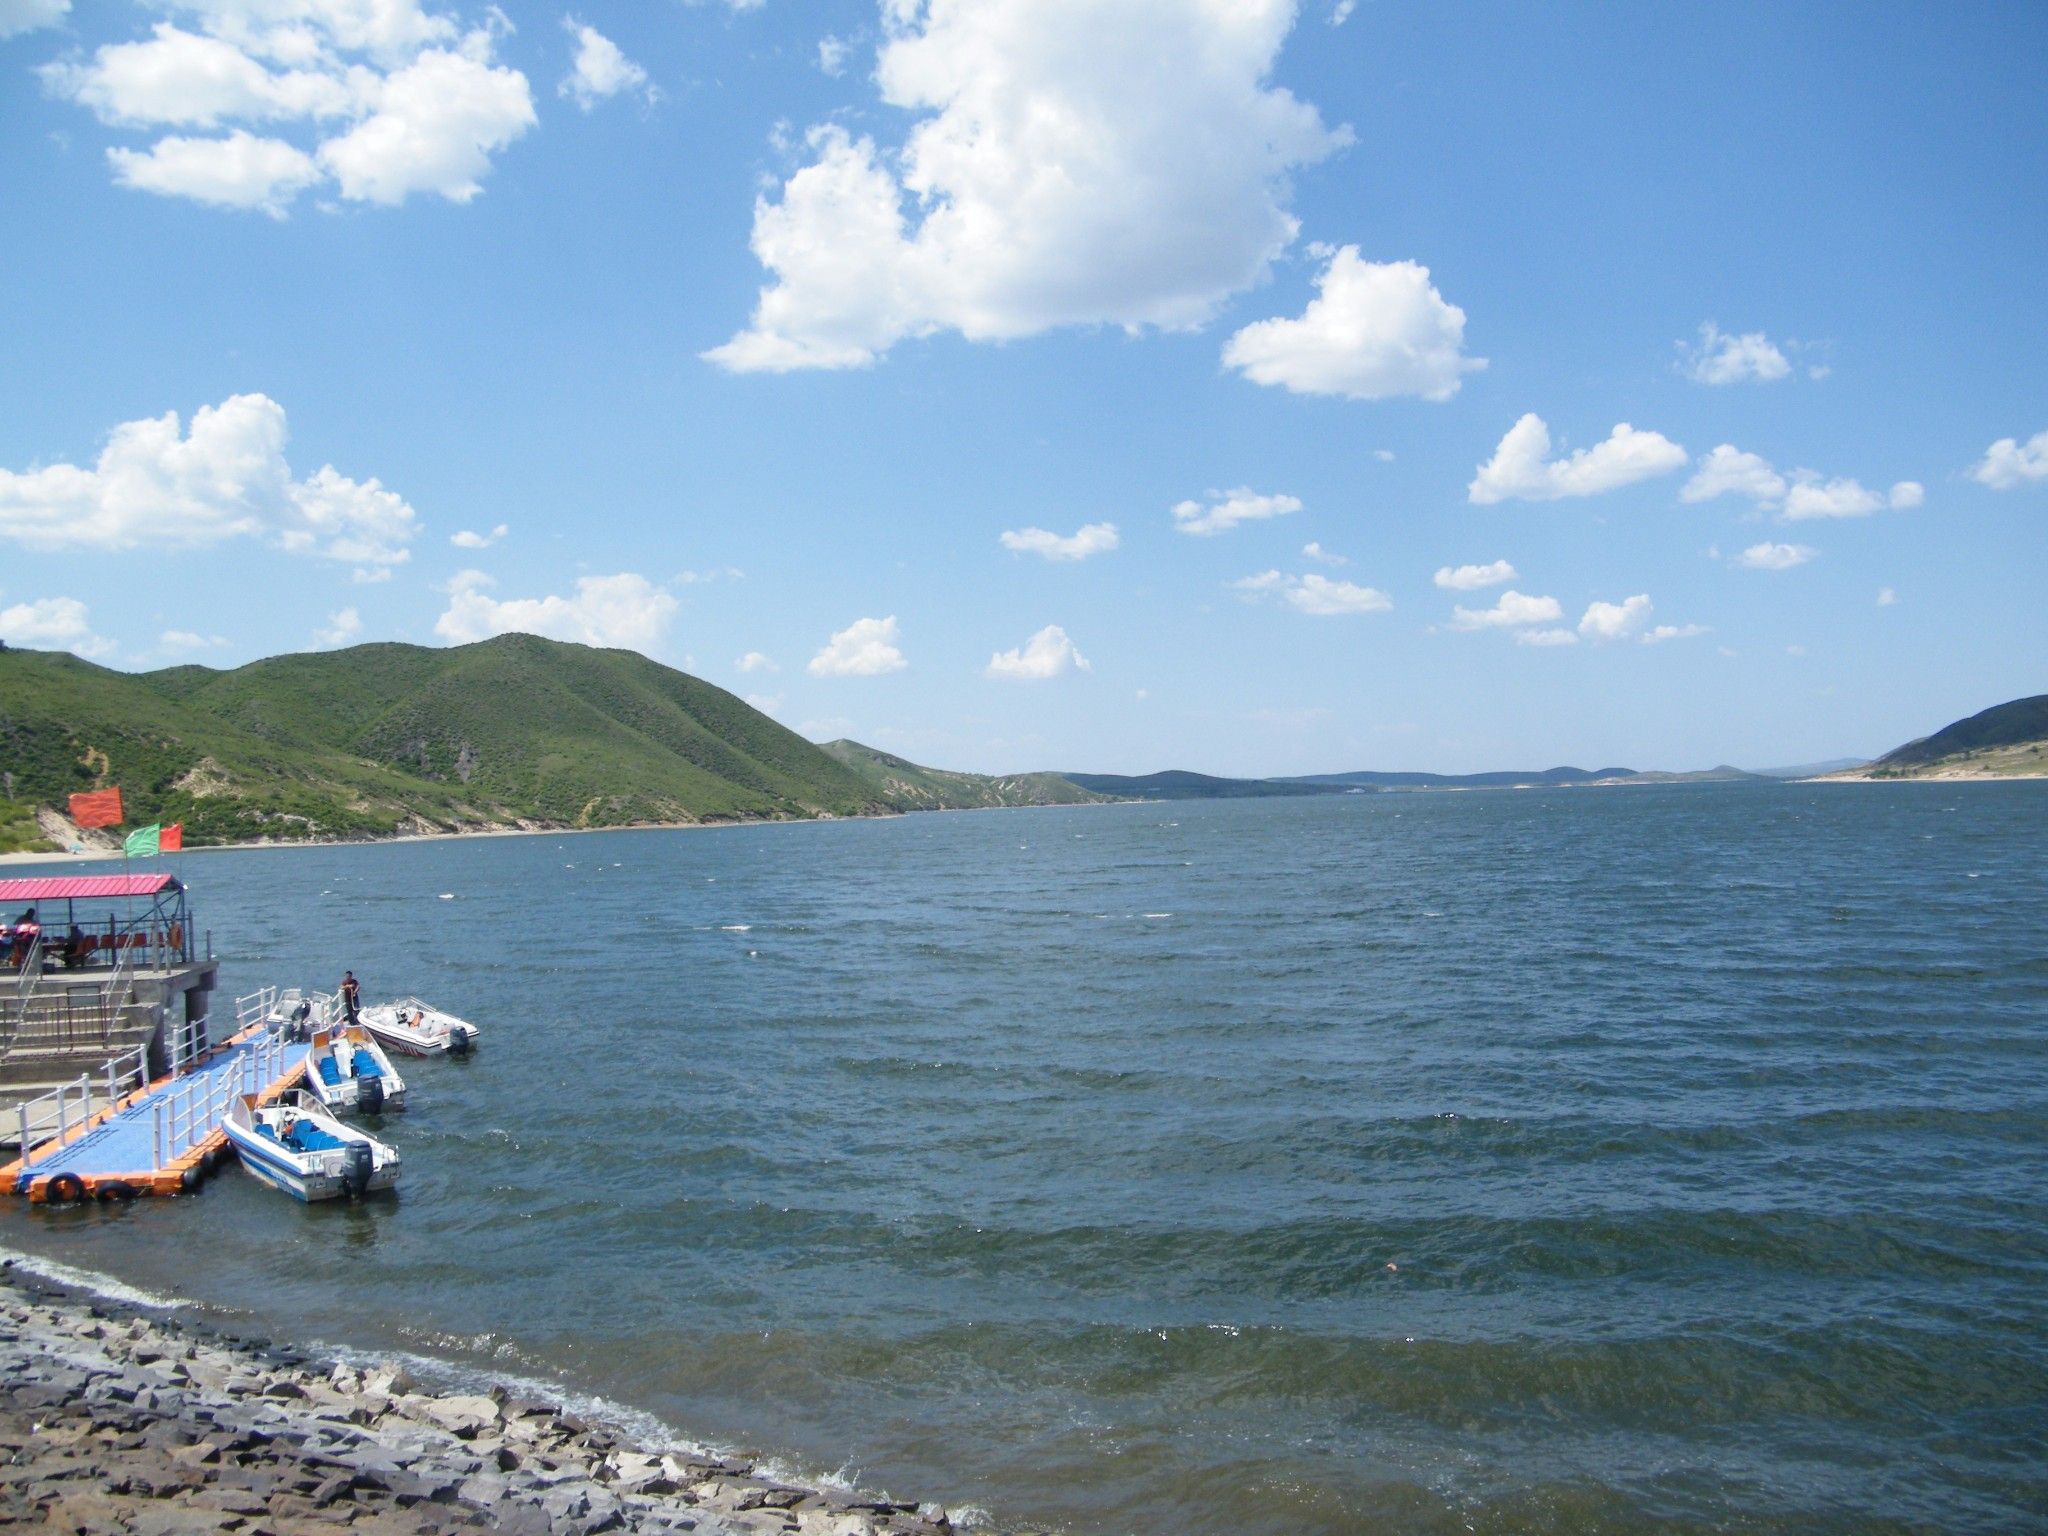 【携程攻略】多伦多伦湖景区景点,多伦湖景区位于内蒙古自治区锡林郭勒盟境内，是滦河上游干流的一部分…